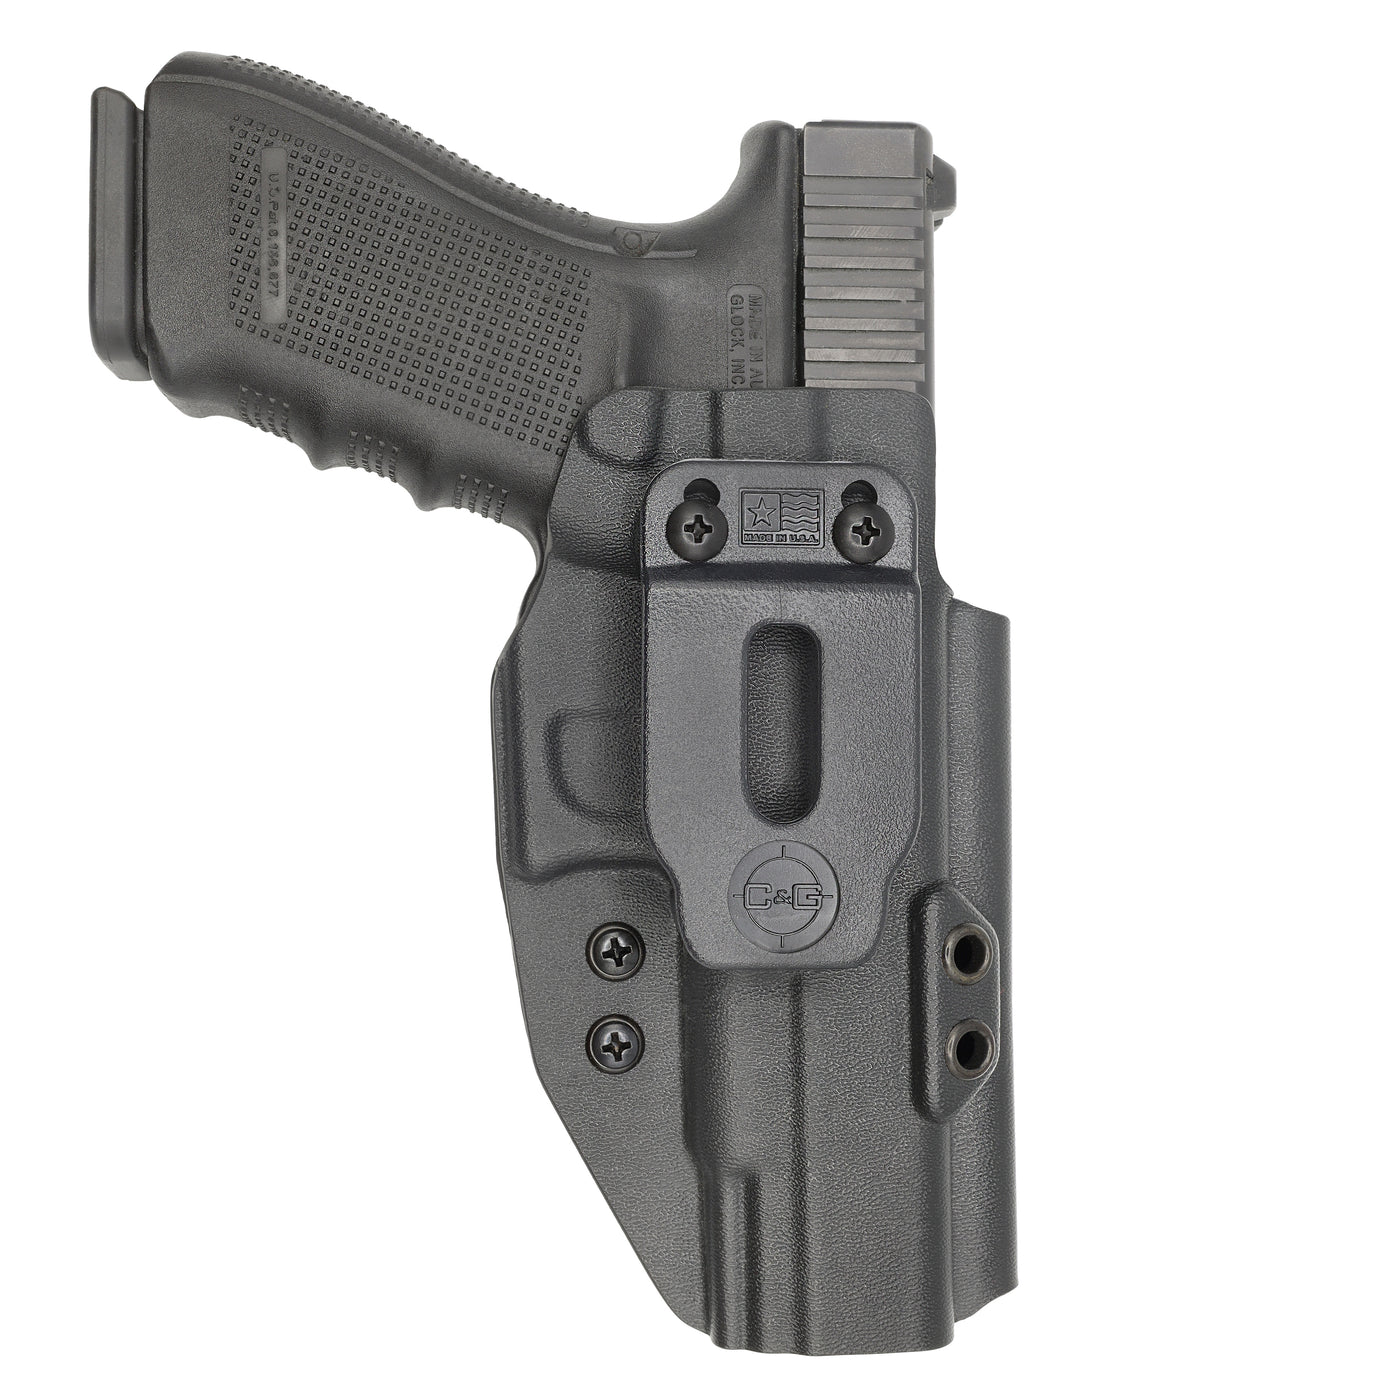 C&G Holsters custom IWB covert Glock 20/21 in holstered position